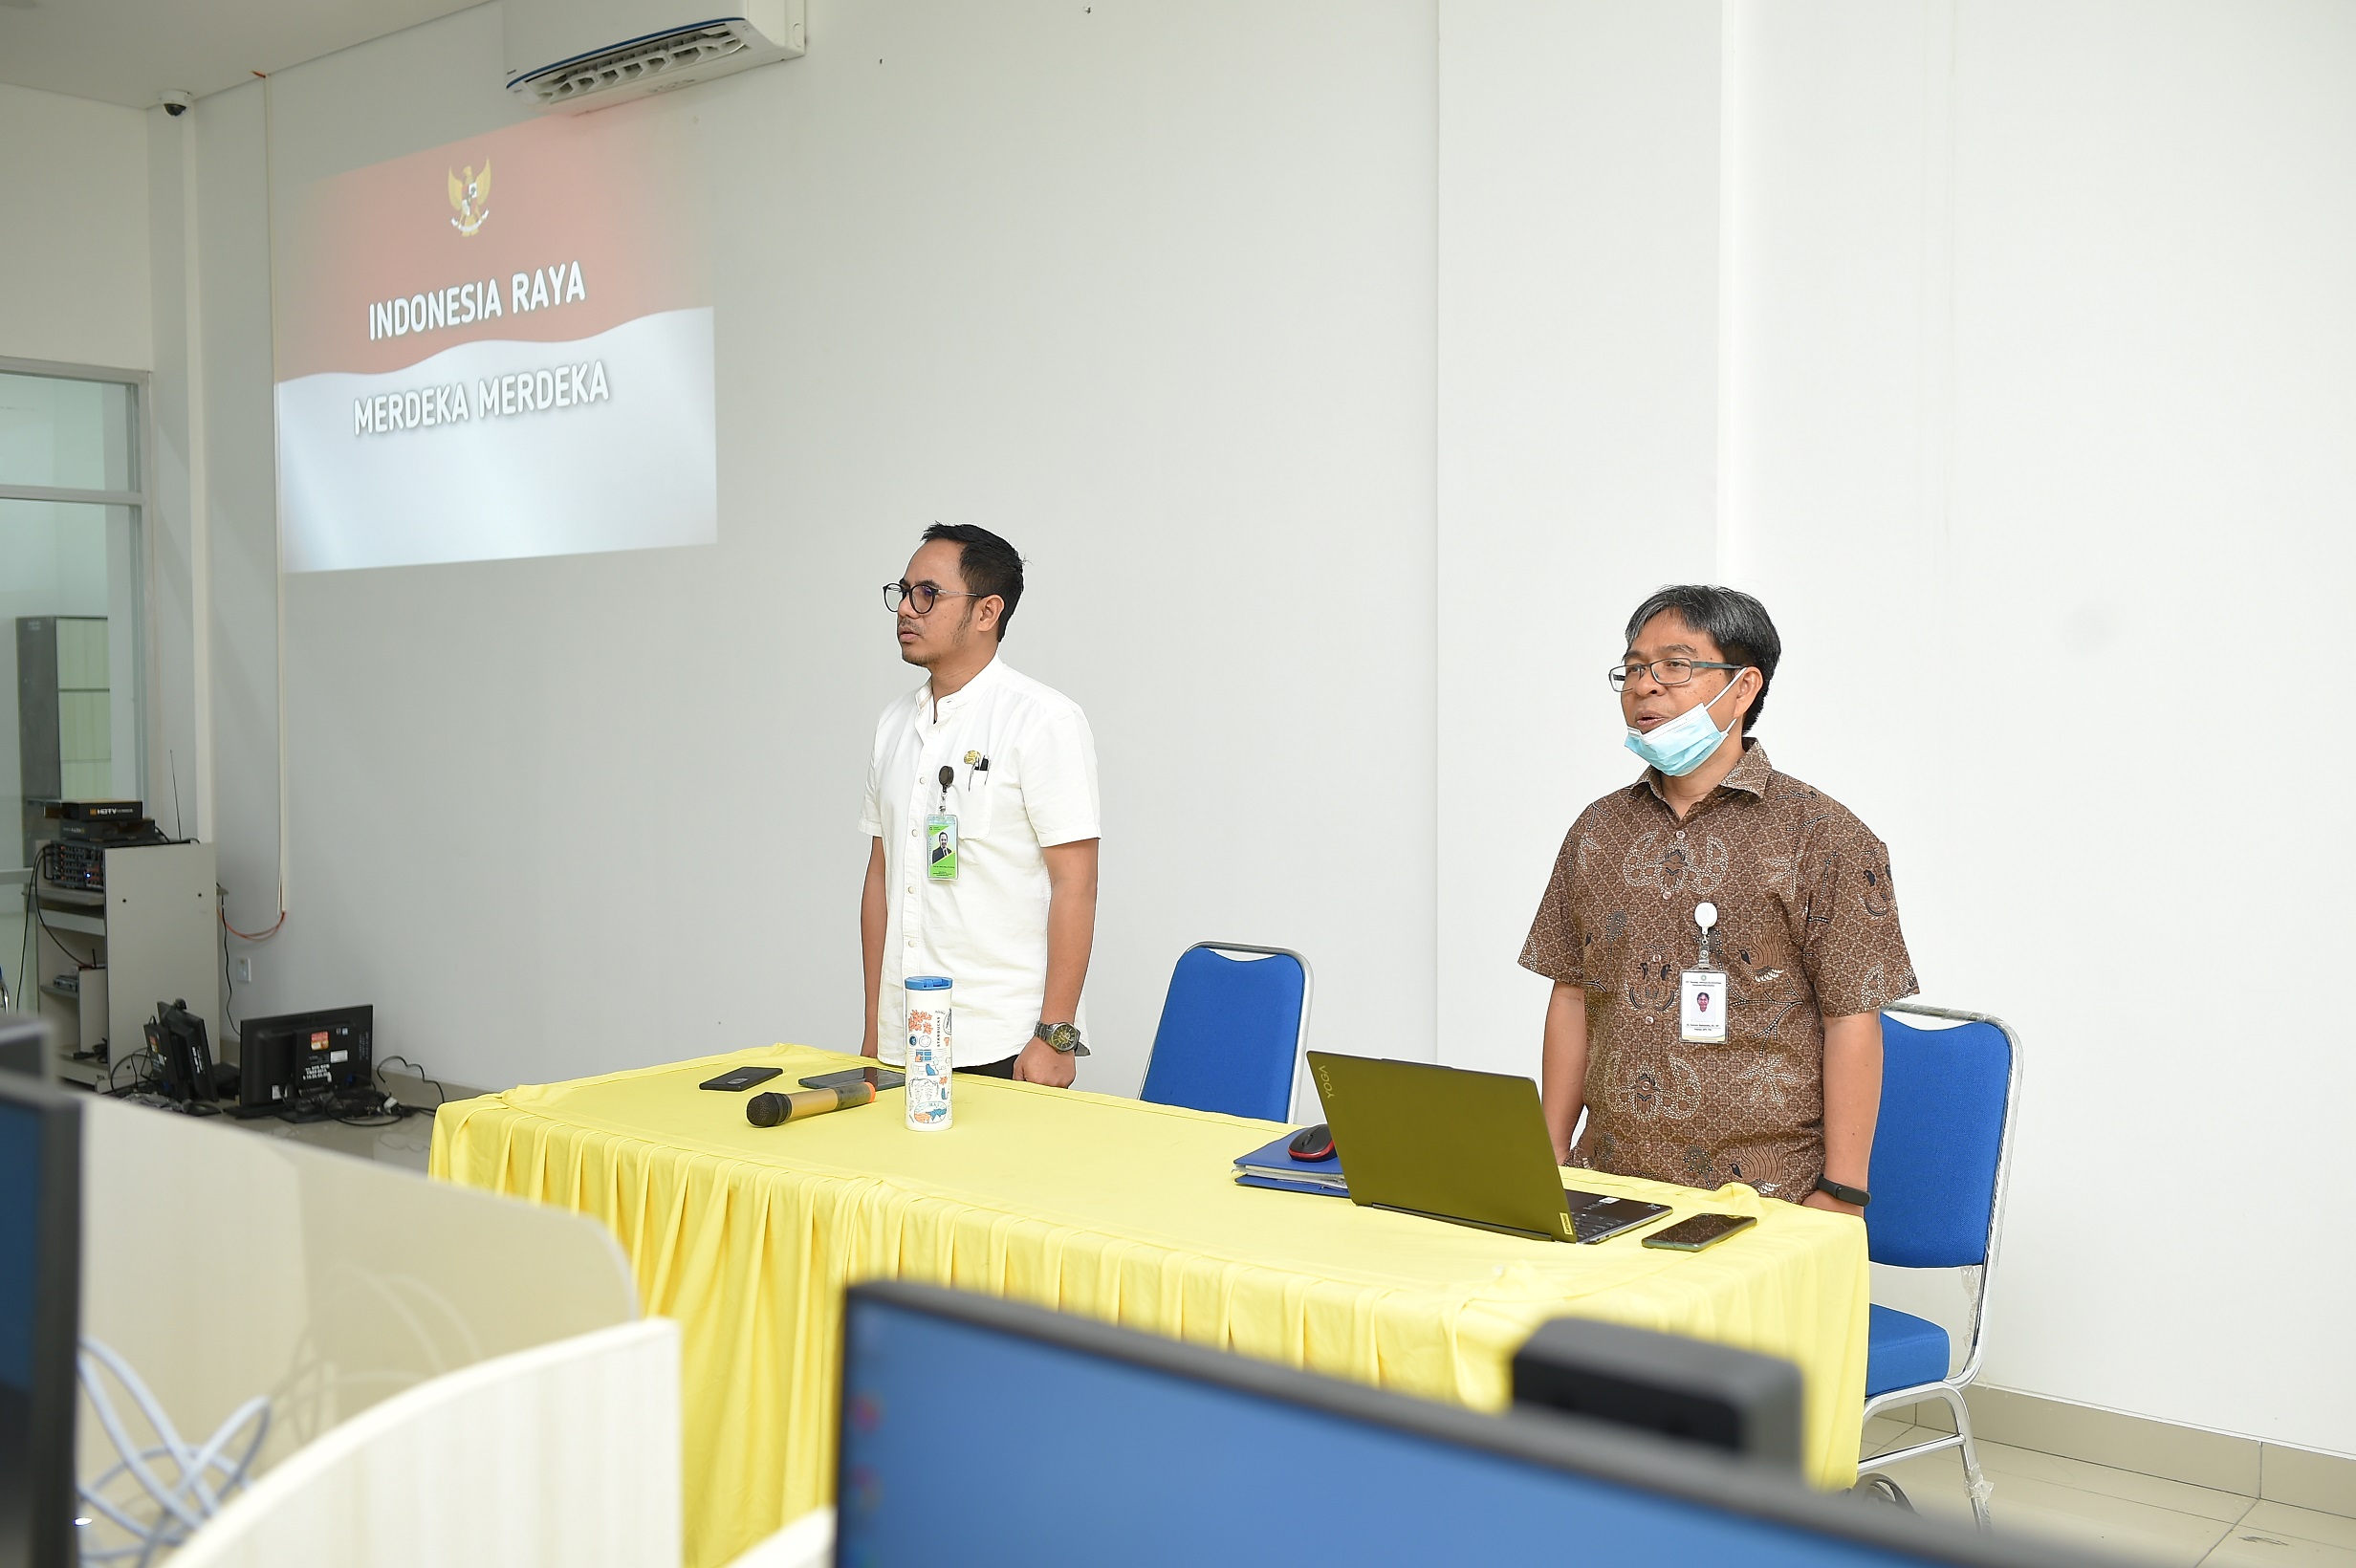 Prof. Jefri Bale Menekankan bahwa peran Admin website sangatlah penting untuk mendukung eksistensi Universitas Nusa Cendana sebagai Implementasi Visi Undana Yaitu Perguruan Tinggi Berorientasi Global.